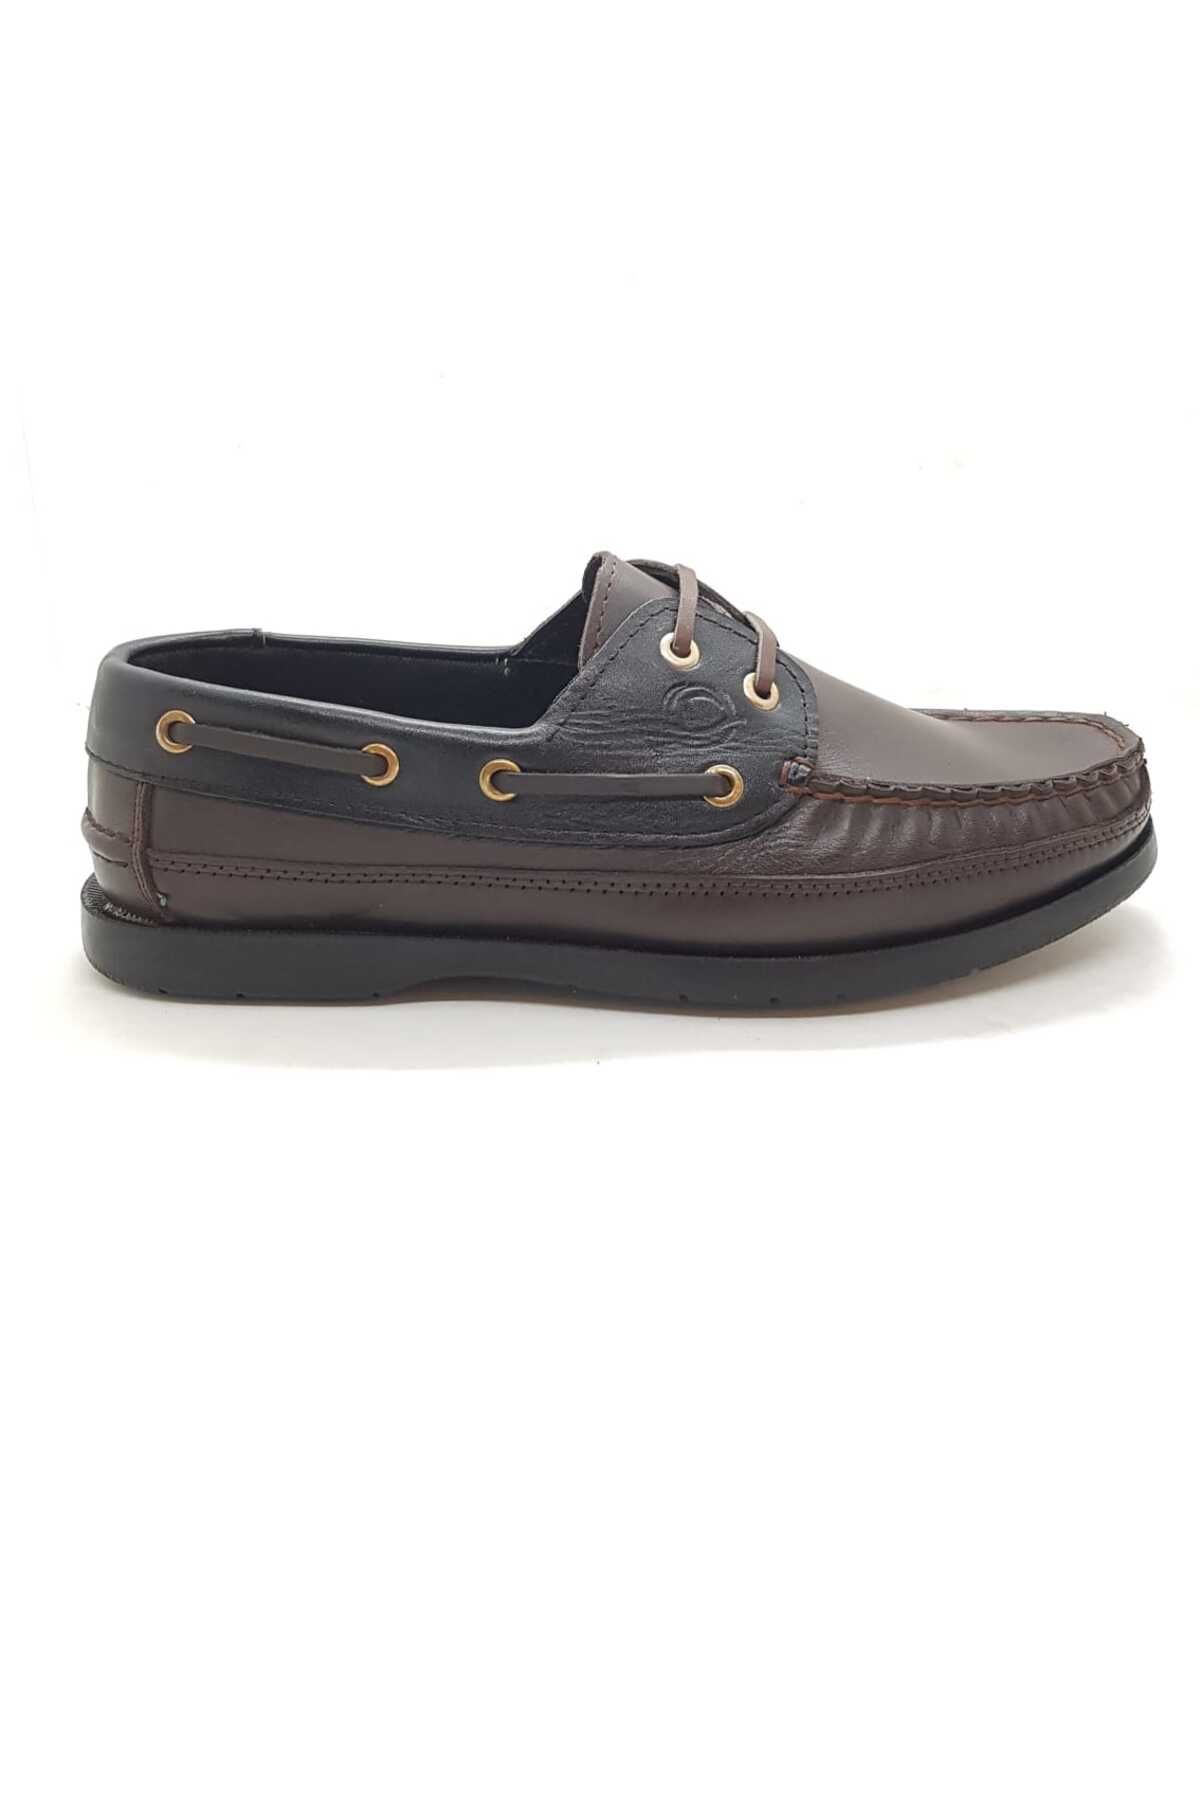 Neco Kahverengi bağcıklı loafer ayakkabı hakiki deri kauçuk taban